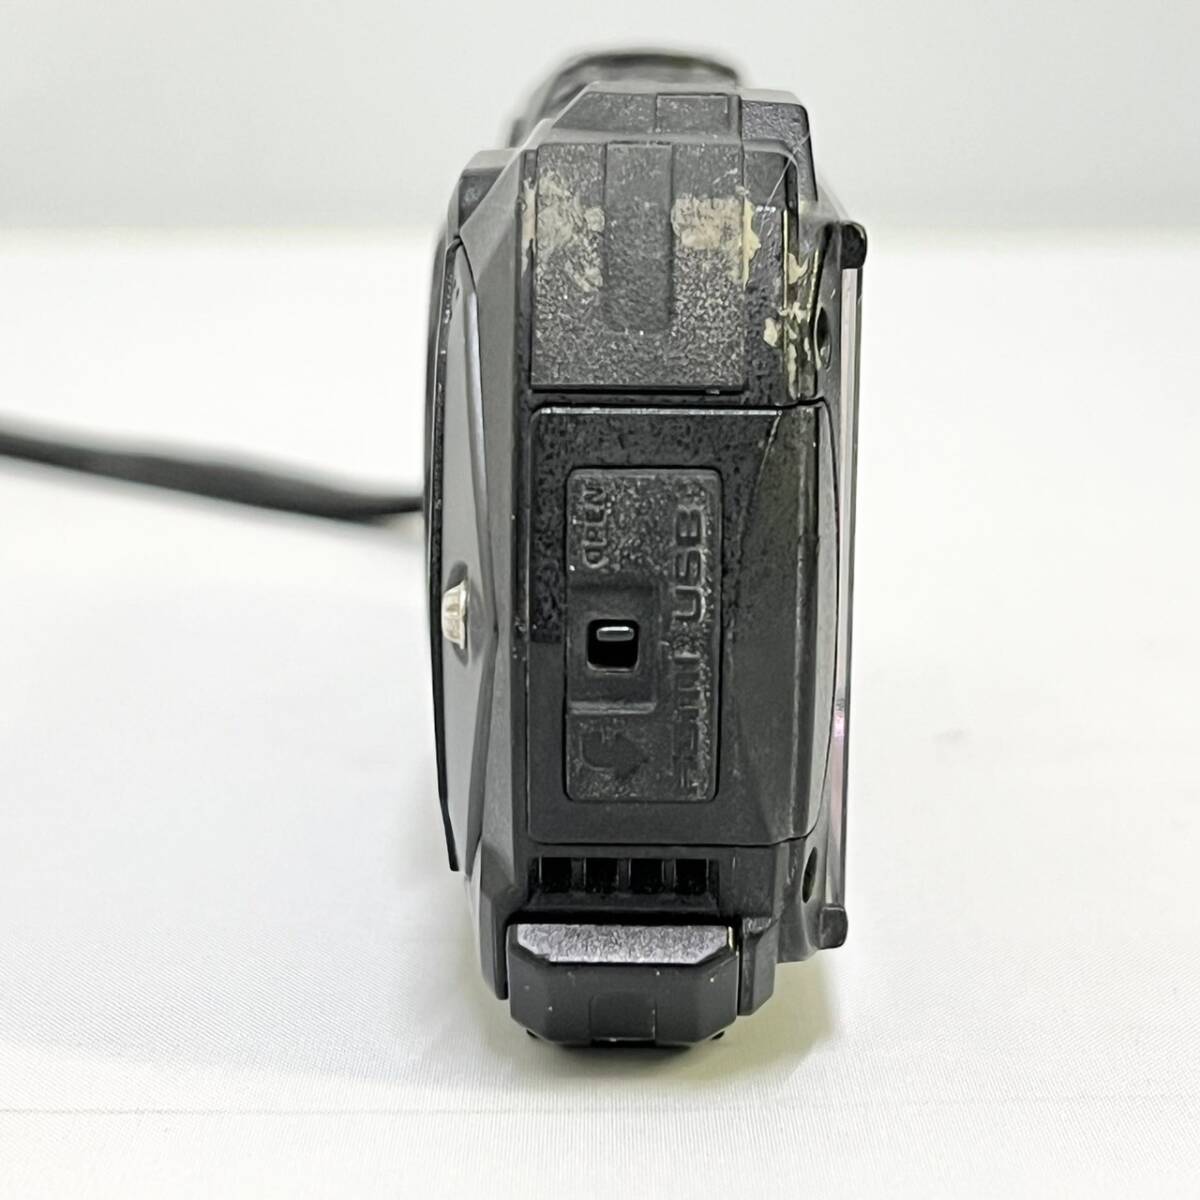 BEg090I 60 RICOH WG-60 Ricoh цифровая камера черный водонепроницаемый камера 14m водонепроницаемый ударопрочный пыленепроницаемый выдерживающий холод 1600 десять тысяч пикселей ma-me-do режим установка 